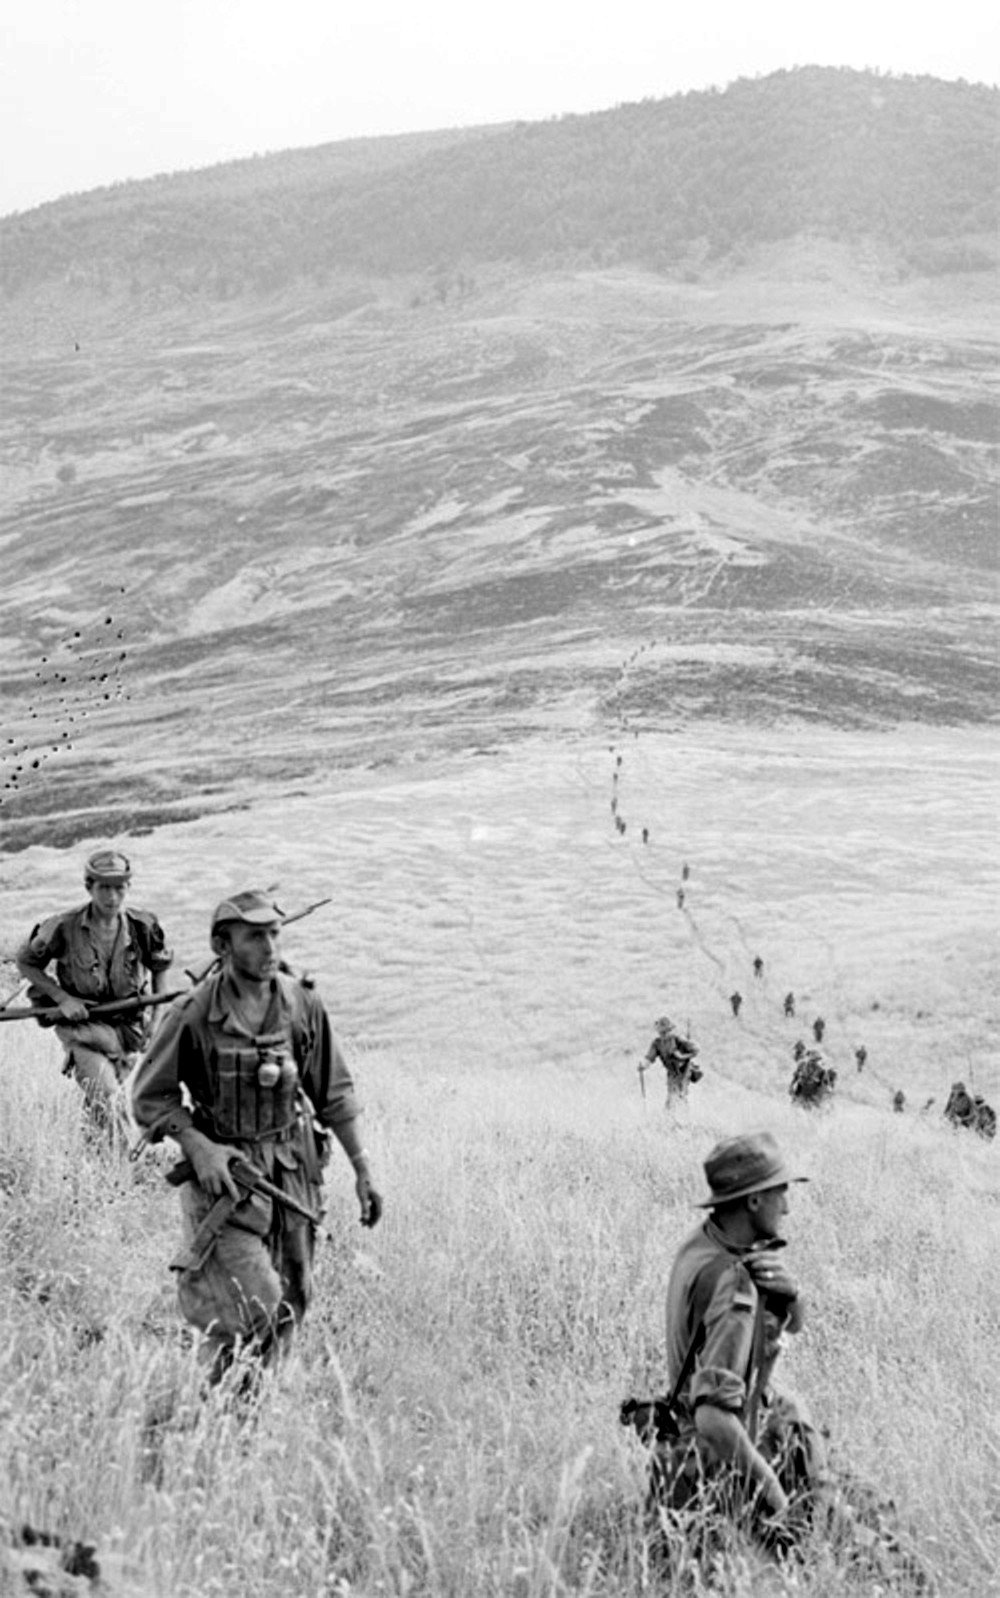 LEMAHIEU S/LNT 1er REP mort au combat le le 26-12-1959 à MARAGNA Douar Malou Kabylie en Algérie française Fkls